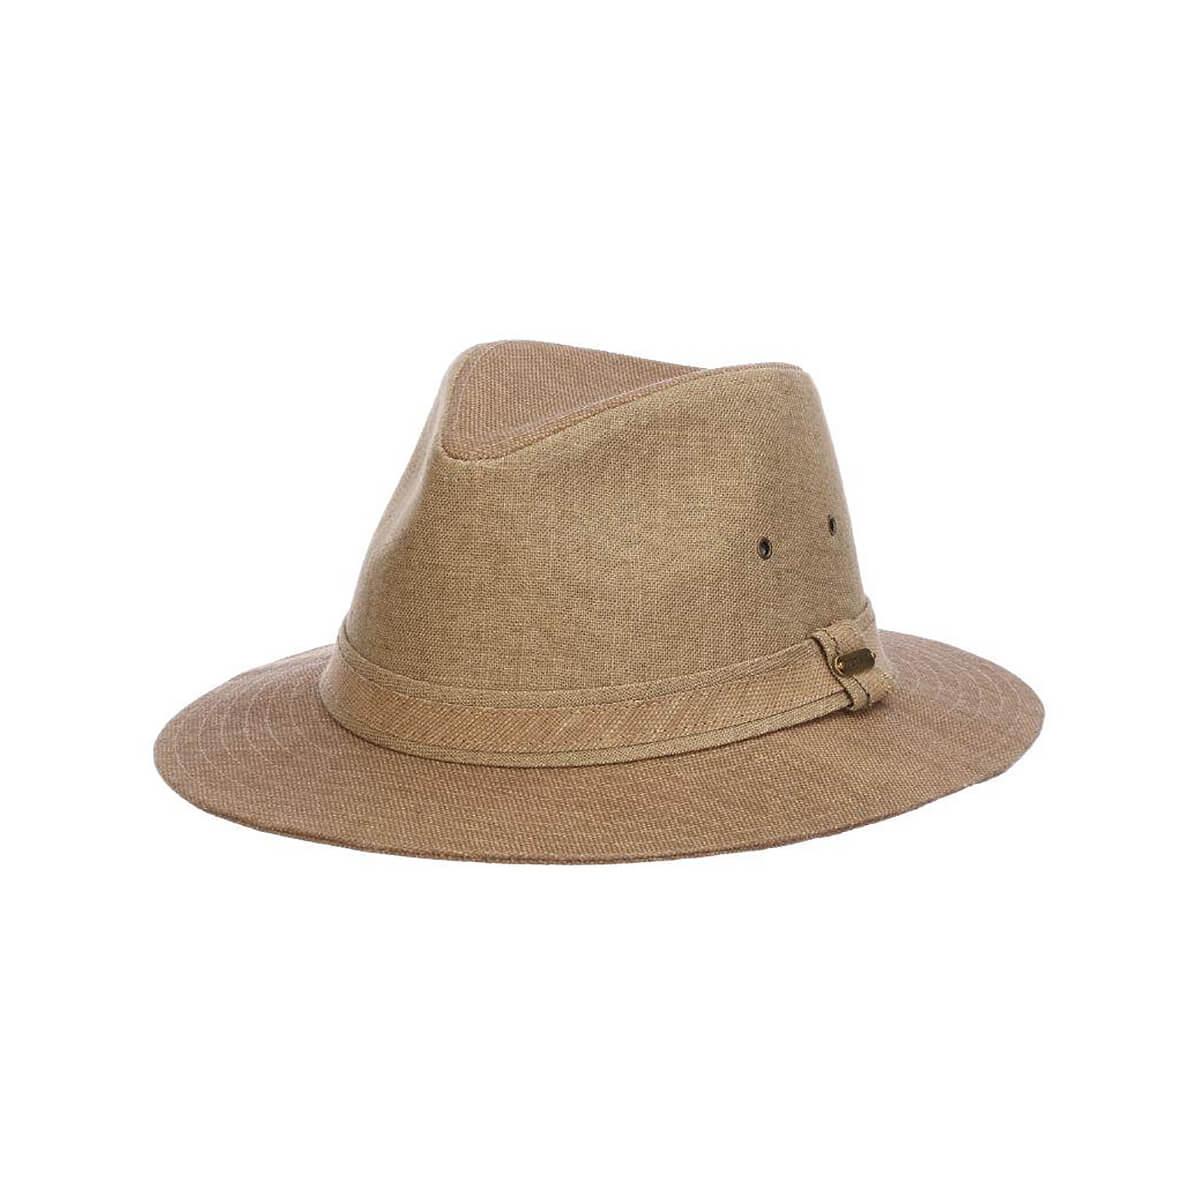  Men's Colton Toyo Safari Hat